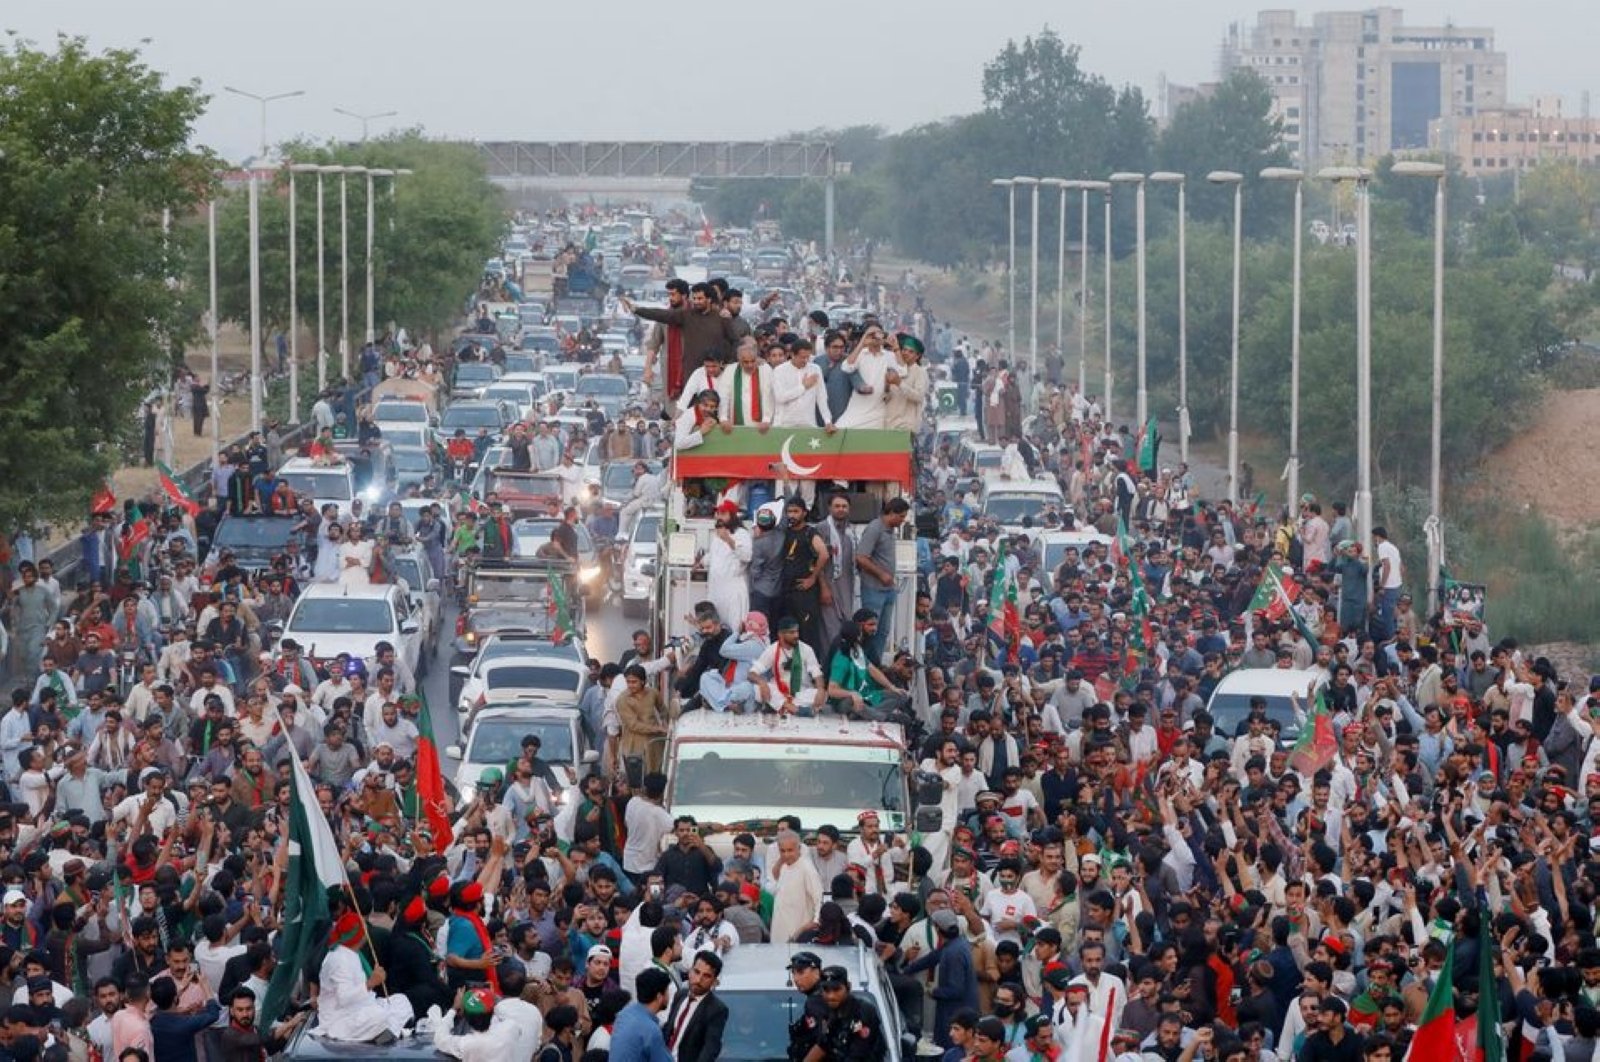 PM Pakistan terguling Khan membatalkan pawai protes setelah bentrokan